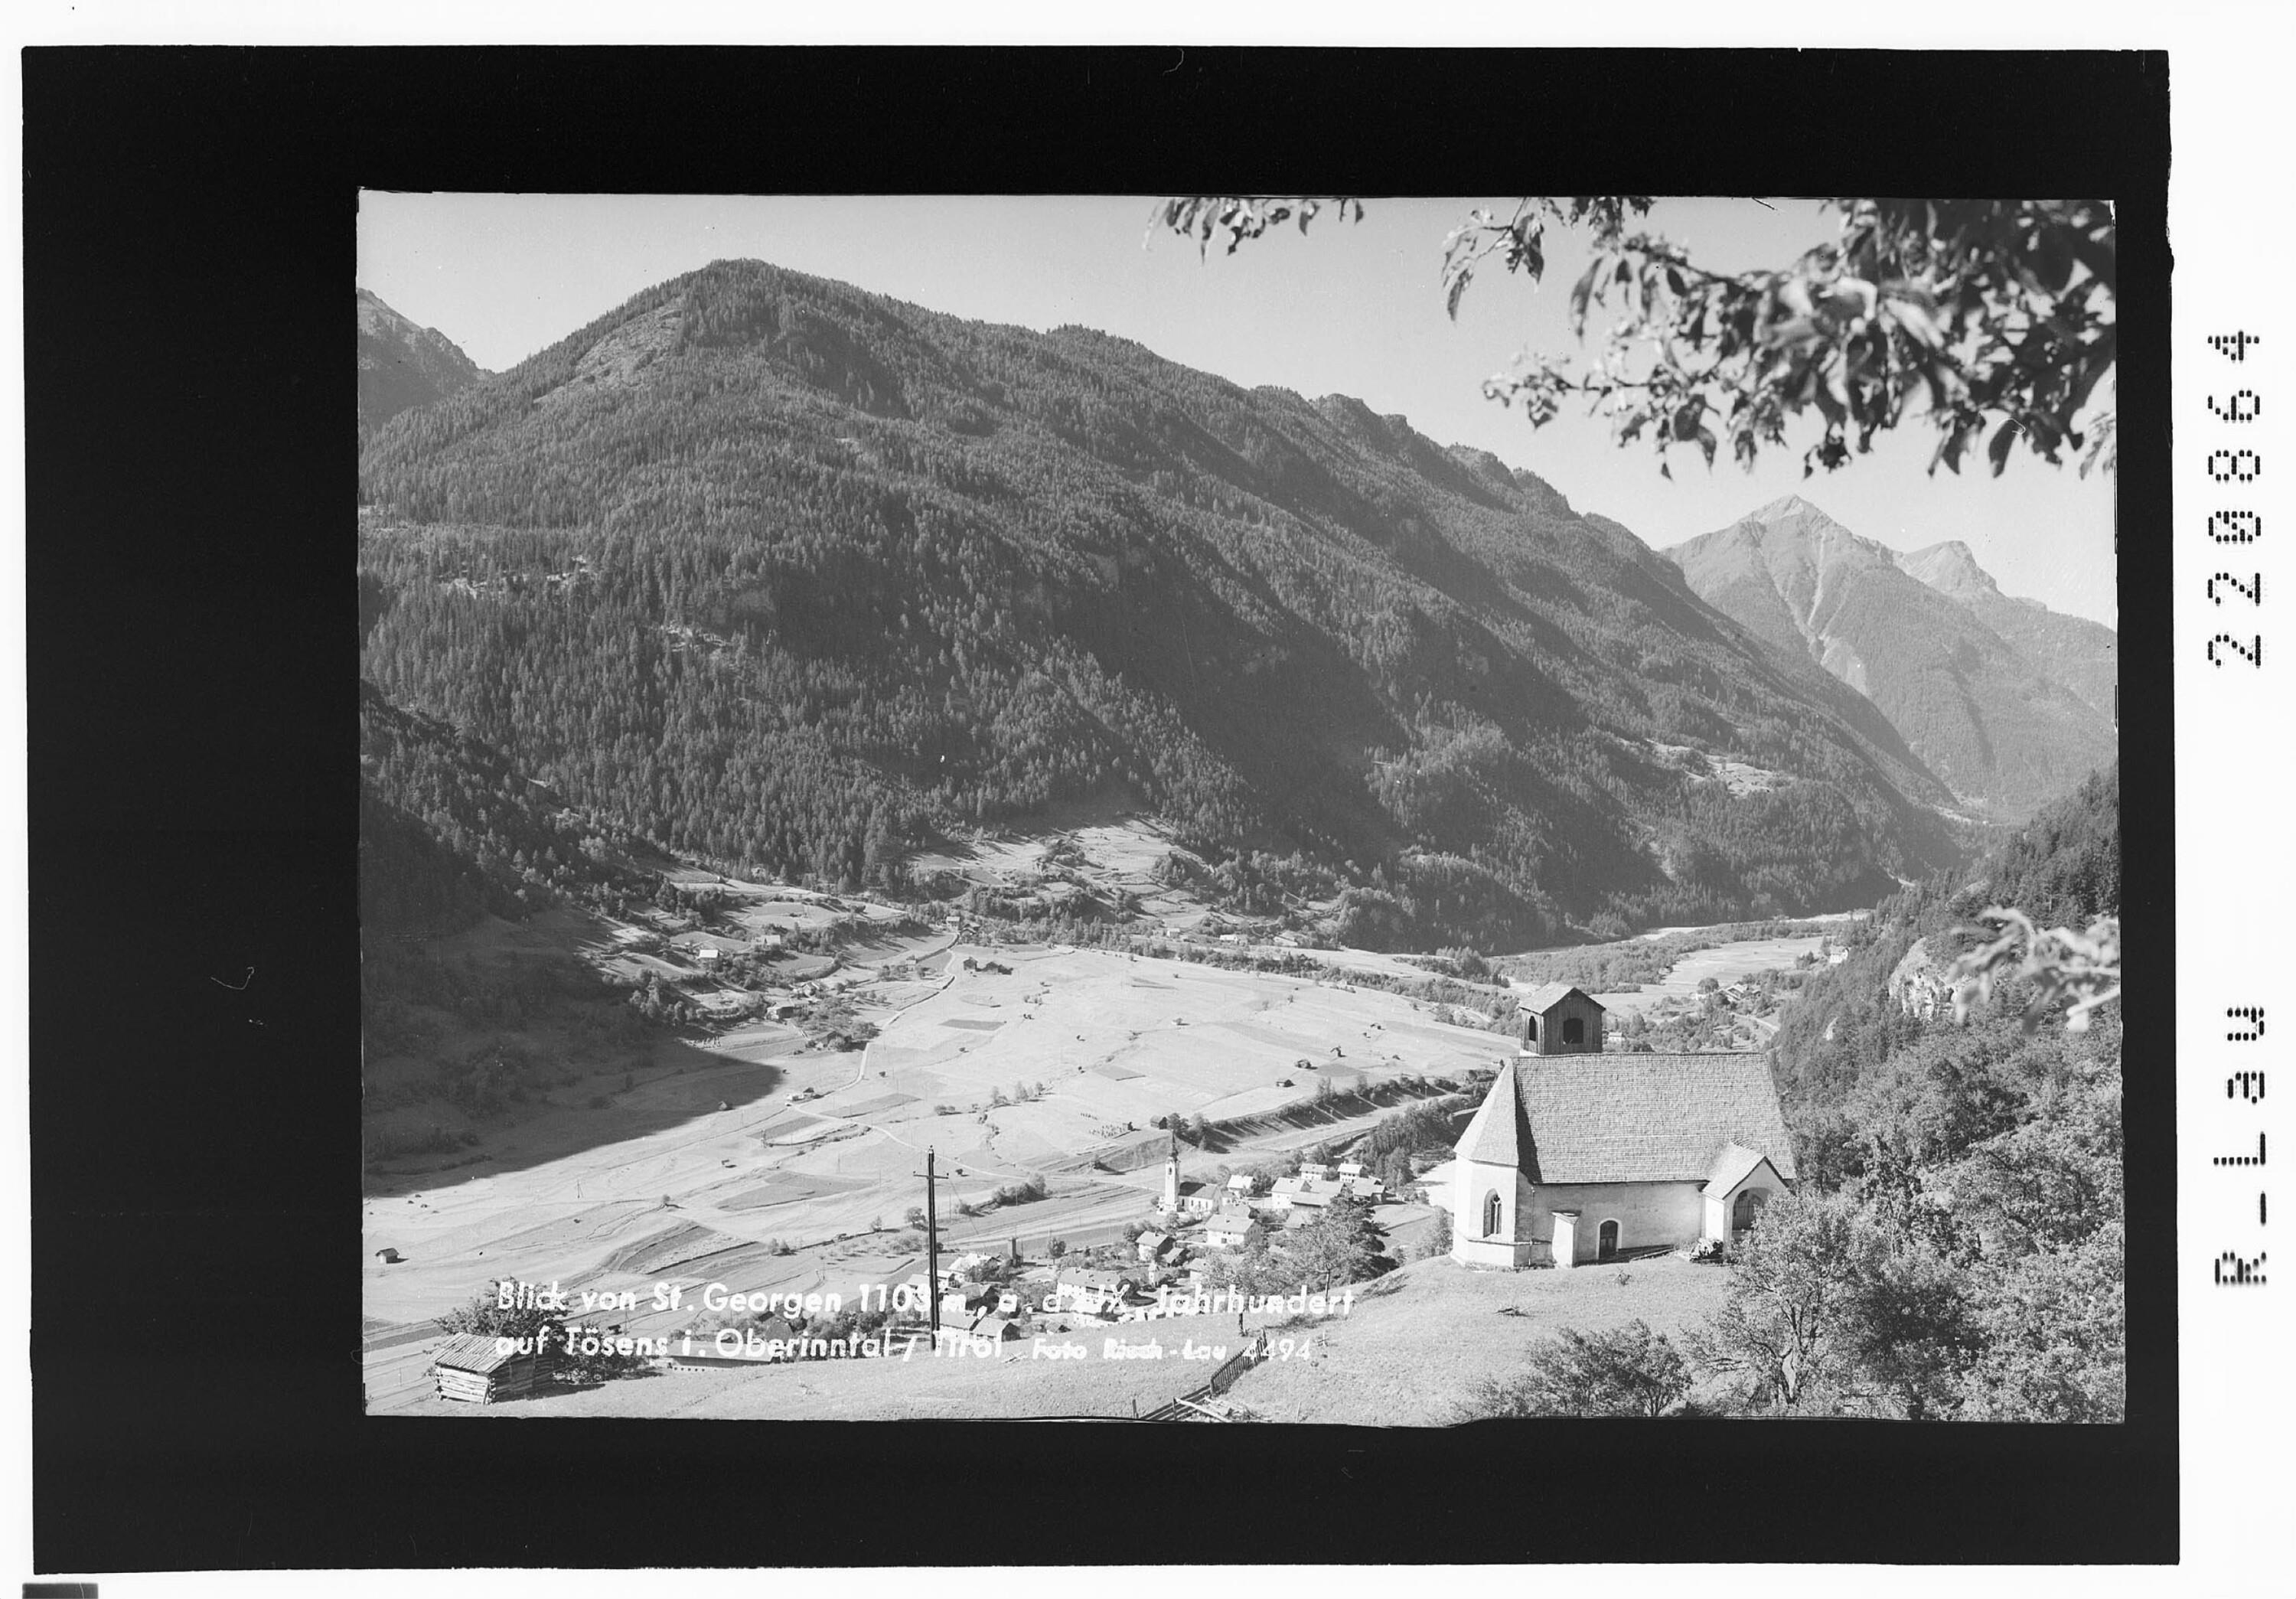 Blick von St.Georgen 1103 m / aus dem IX Jahrhundert / auf Tösens im Oberinntal / Tirol></div>


    <hr>
    <div class=